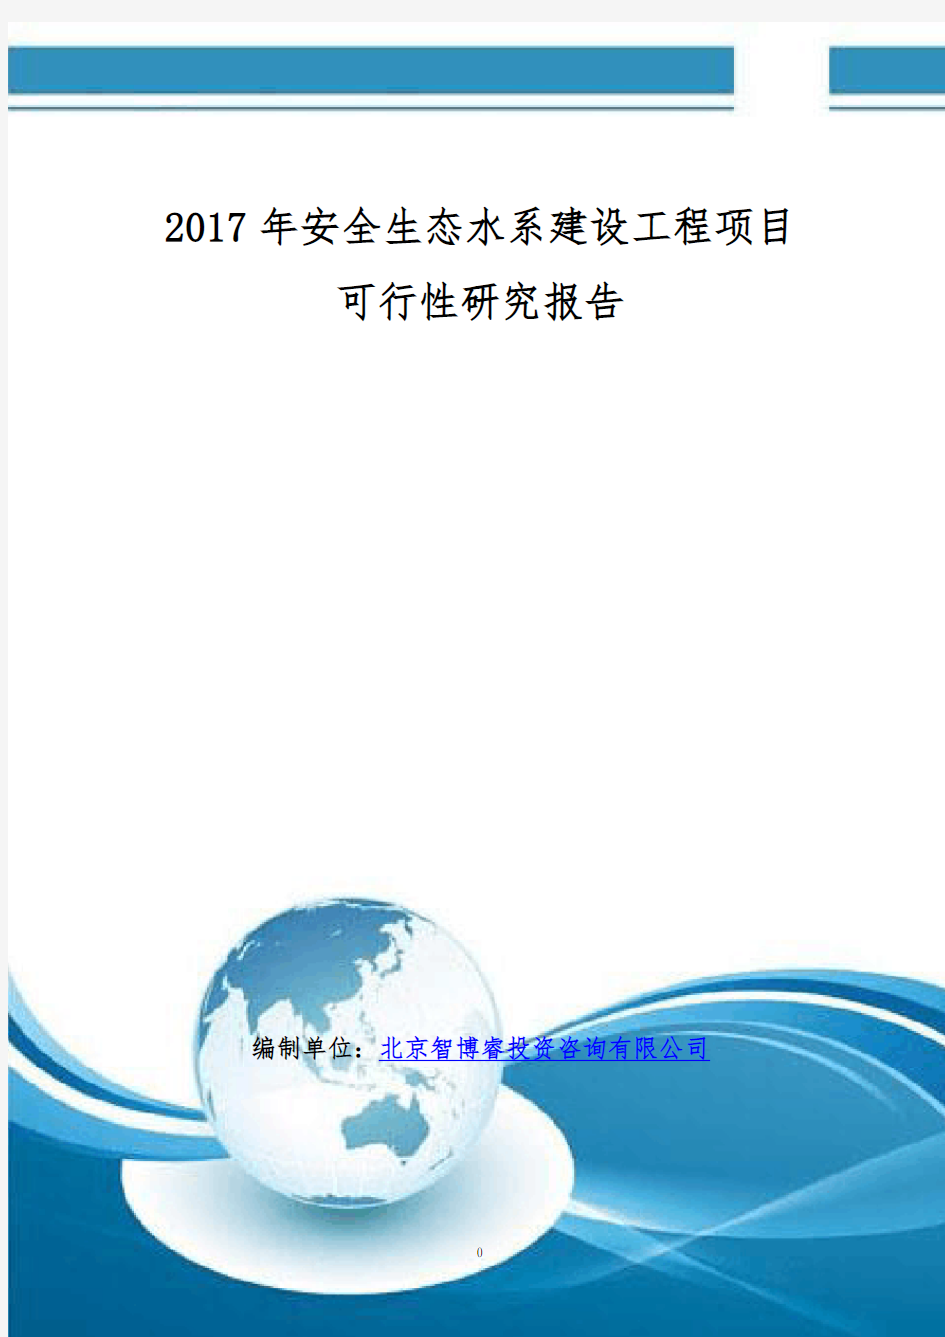 2017年安全生态水系建设工程项目可行性研究报告(编制大纲)